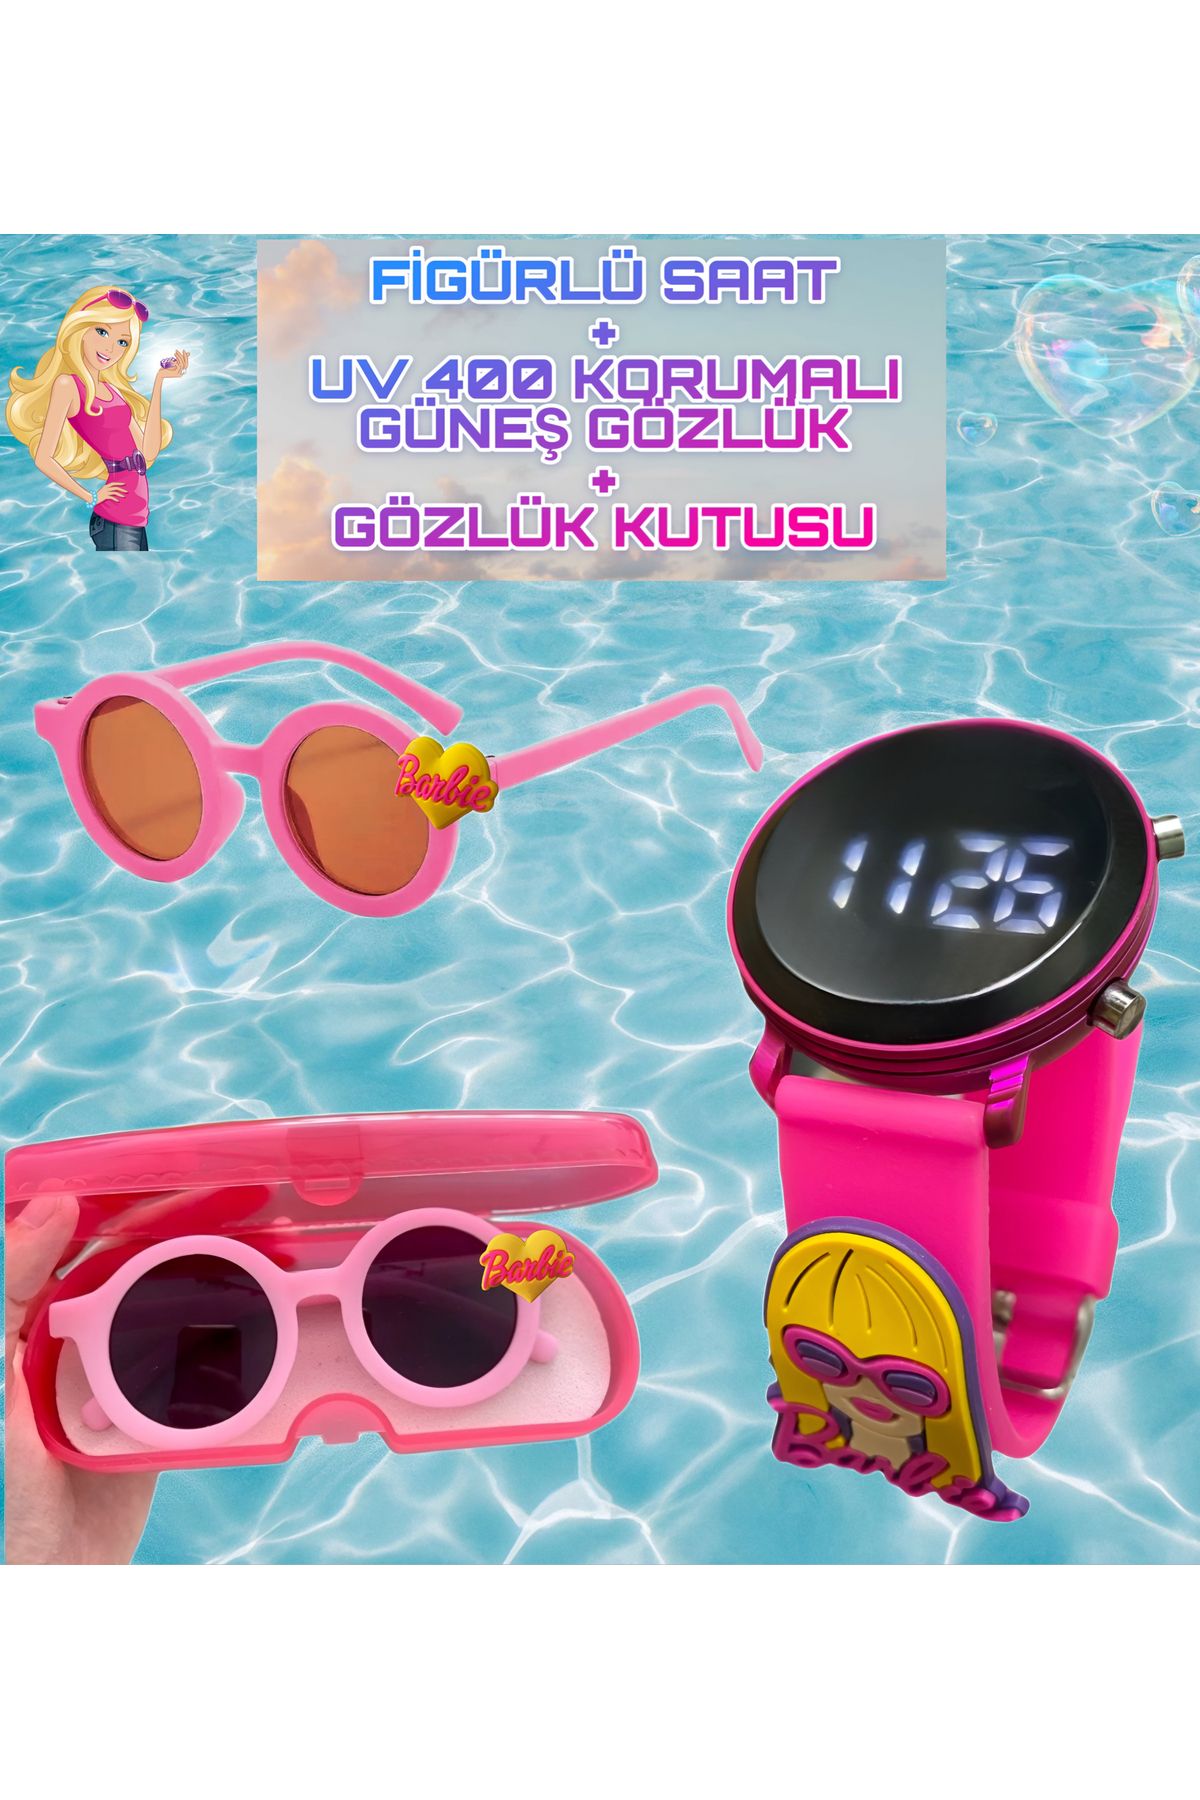 Onkatech X77 Figürlü Dijital Dokunmatik Led Ekran Çocuk Saati +Figürlü Gözlük (Gözlük Kutusu ile)